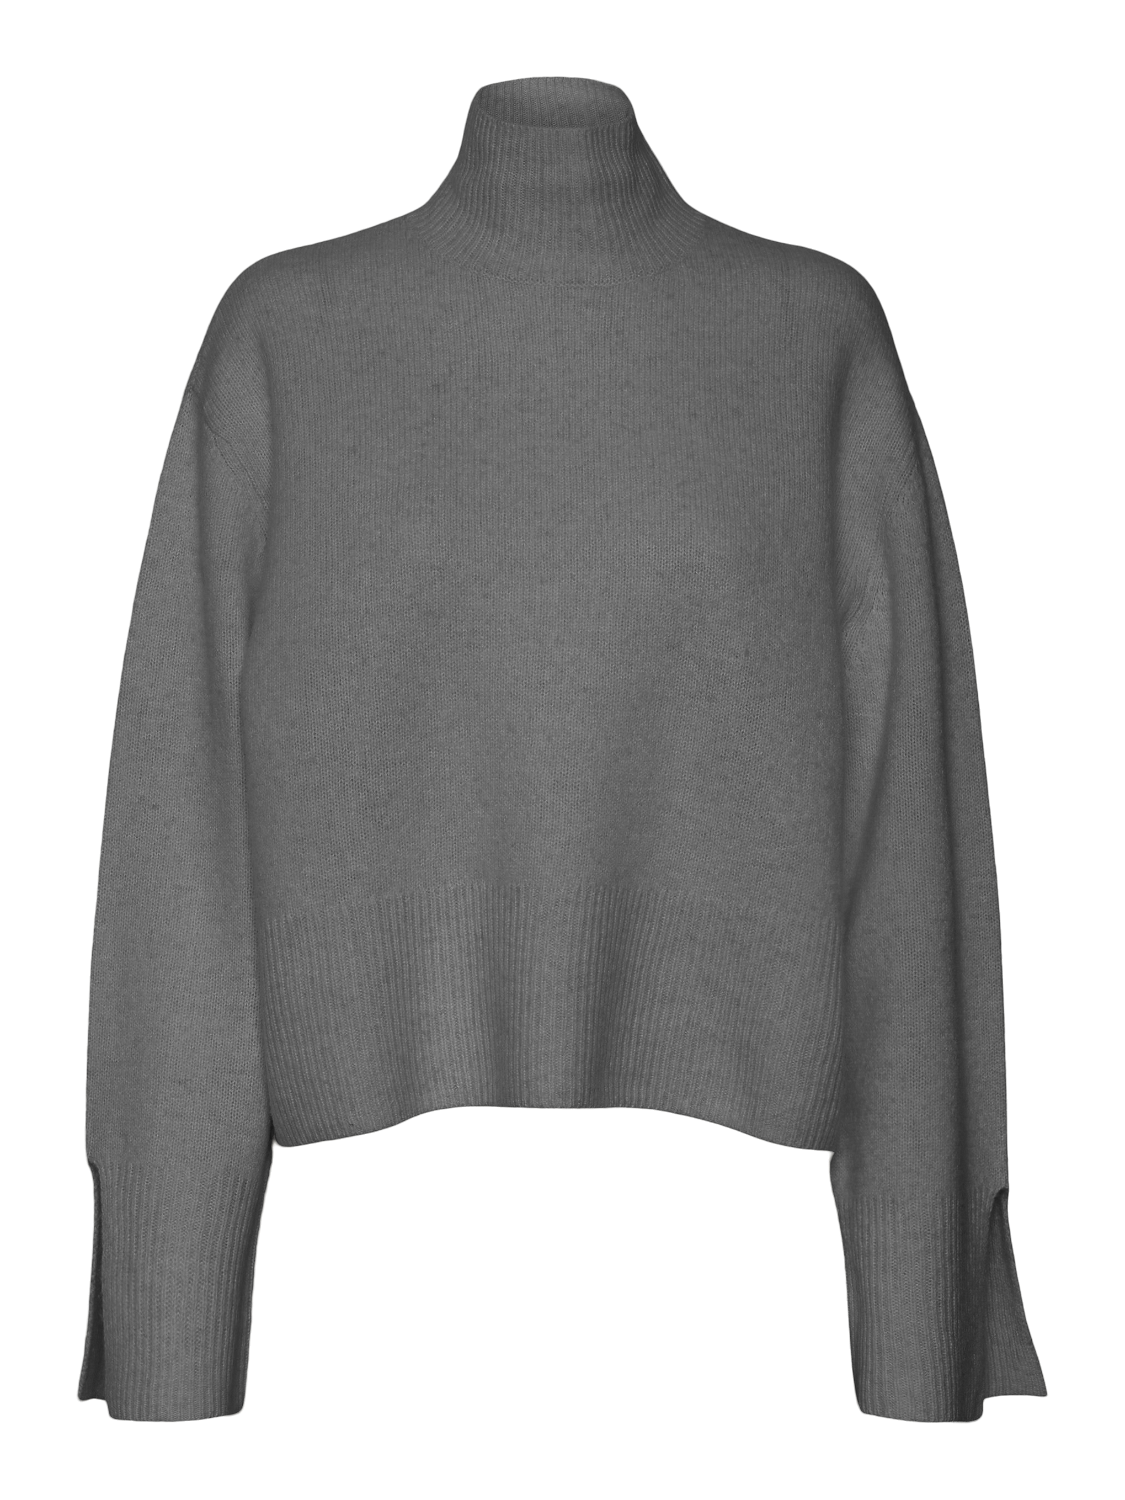 VMENDURE Pullover - Medium Grey Melange